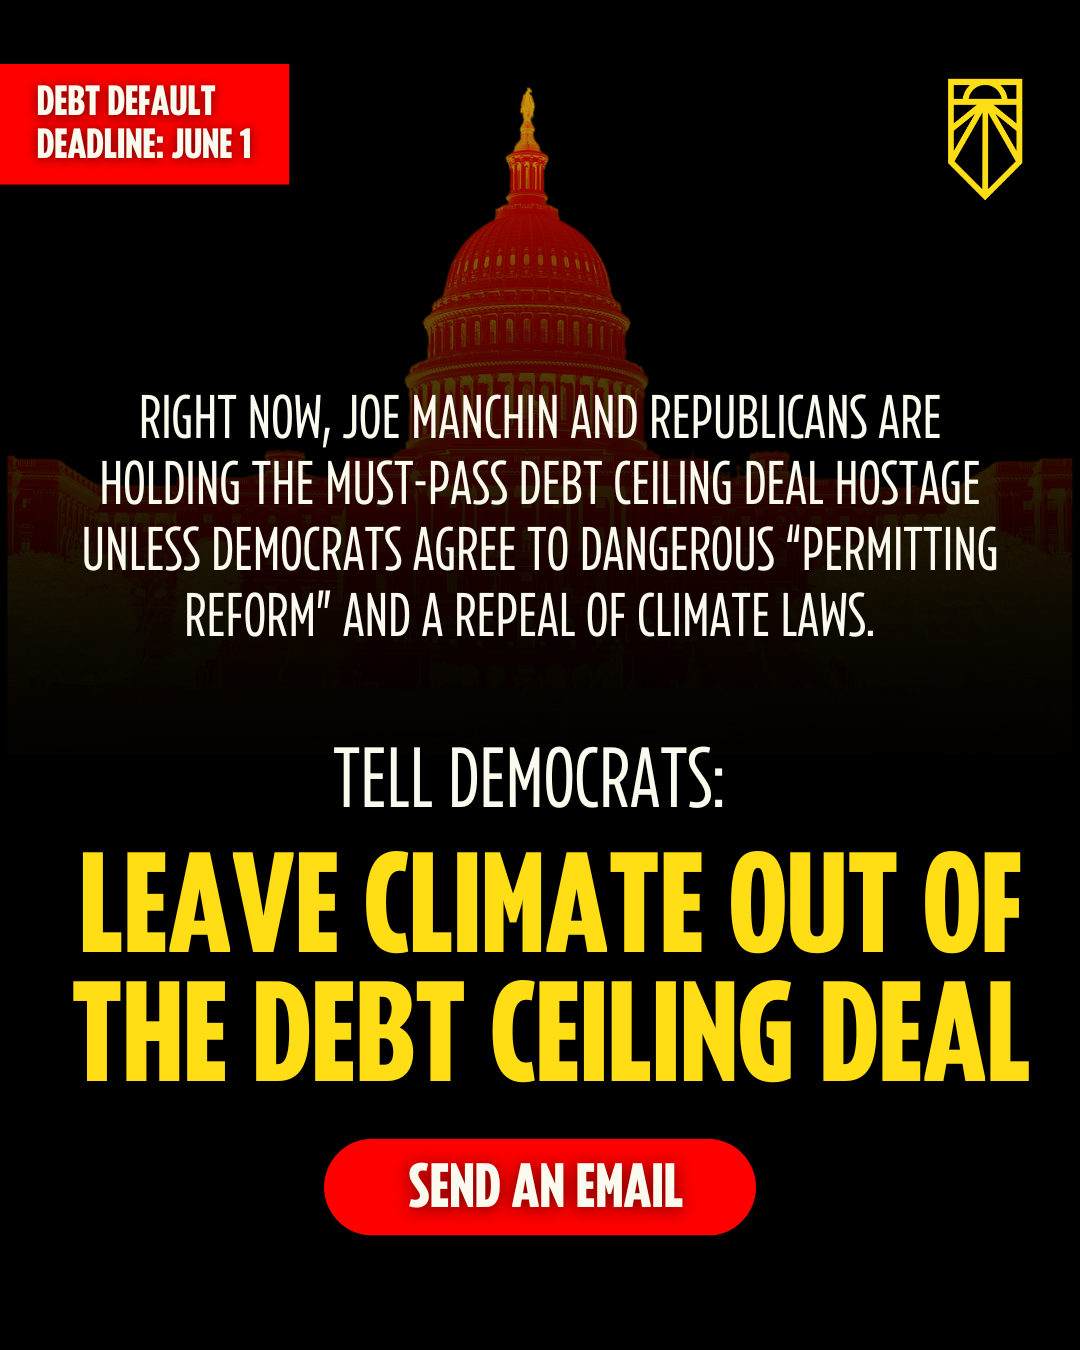 La crisi climatica è già qui. Biden, dichiarare emergenza climatica. Firma la petizione.